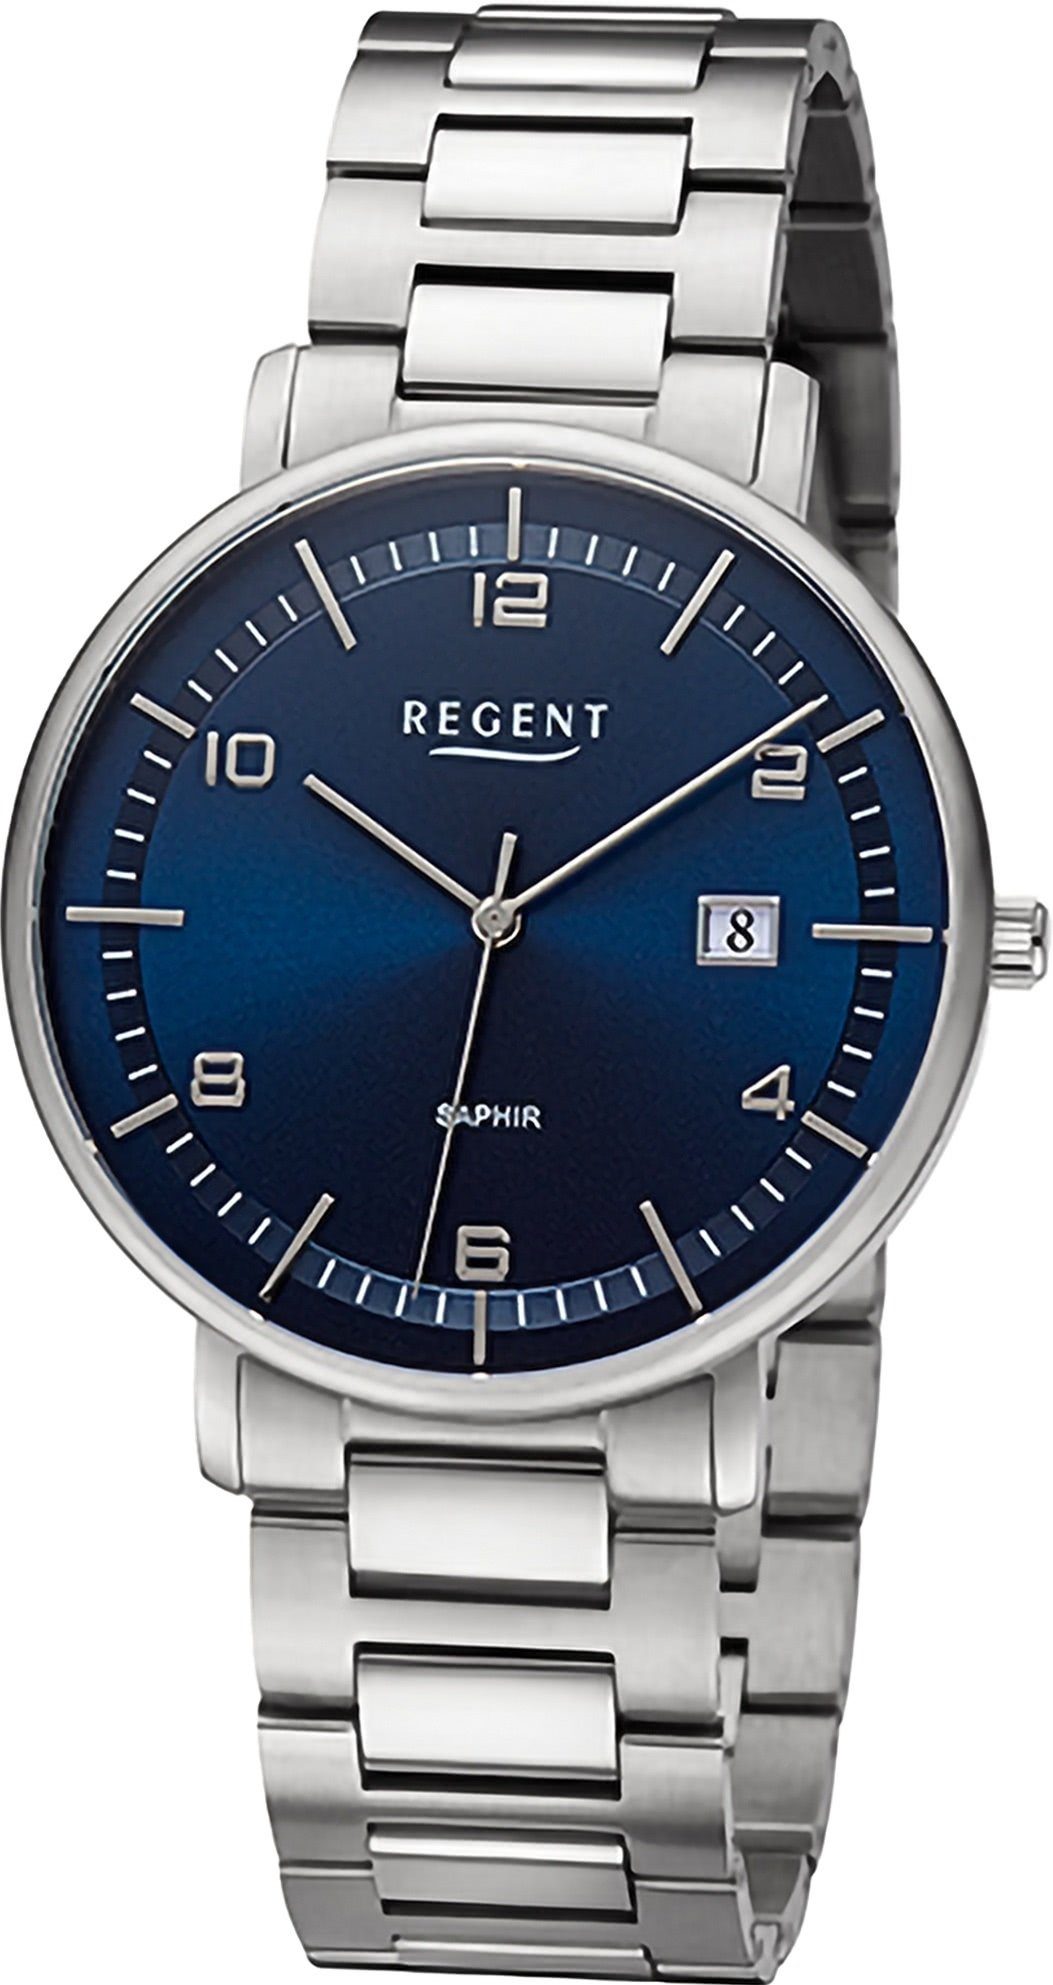 Armbanduhr Uhrzeit rund, Analog, Armbanduhr Herren Regent extra Metallarmband, Regent groß (ca. 42mm), Herren Quarzuhr